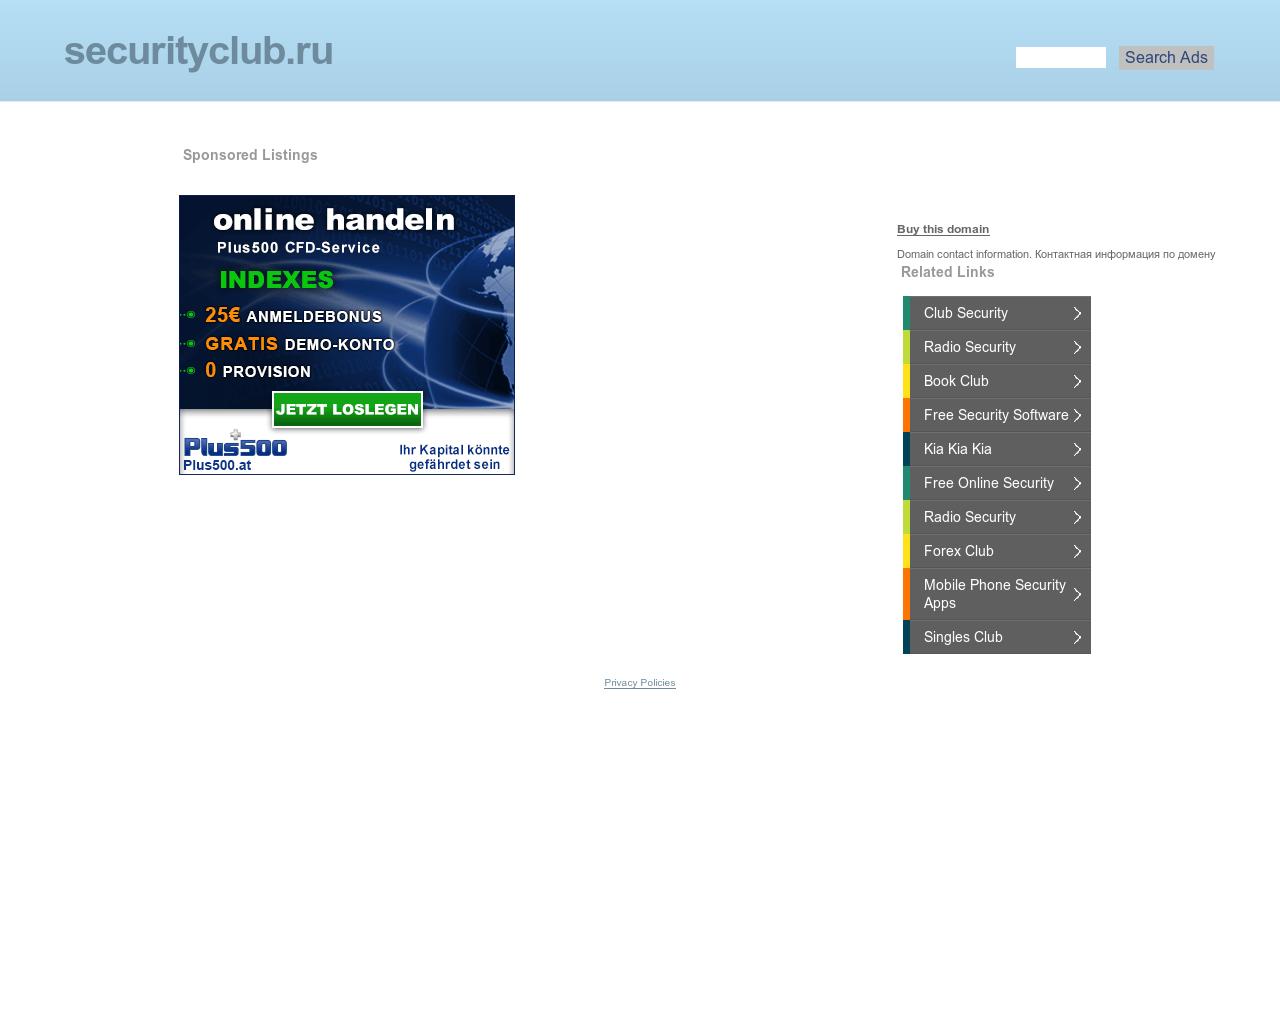 Изображение сайта securityclub.ru в разрешении 1280x1024